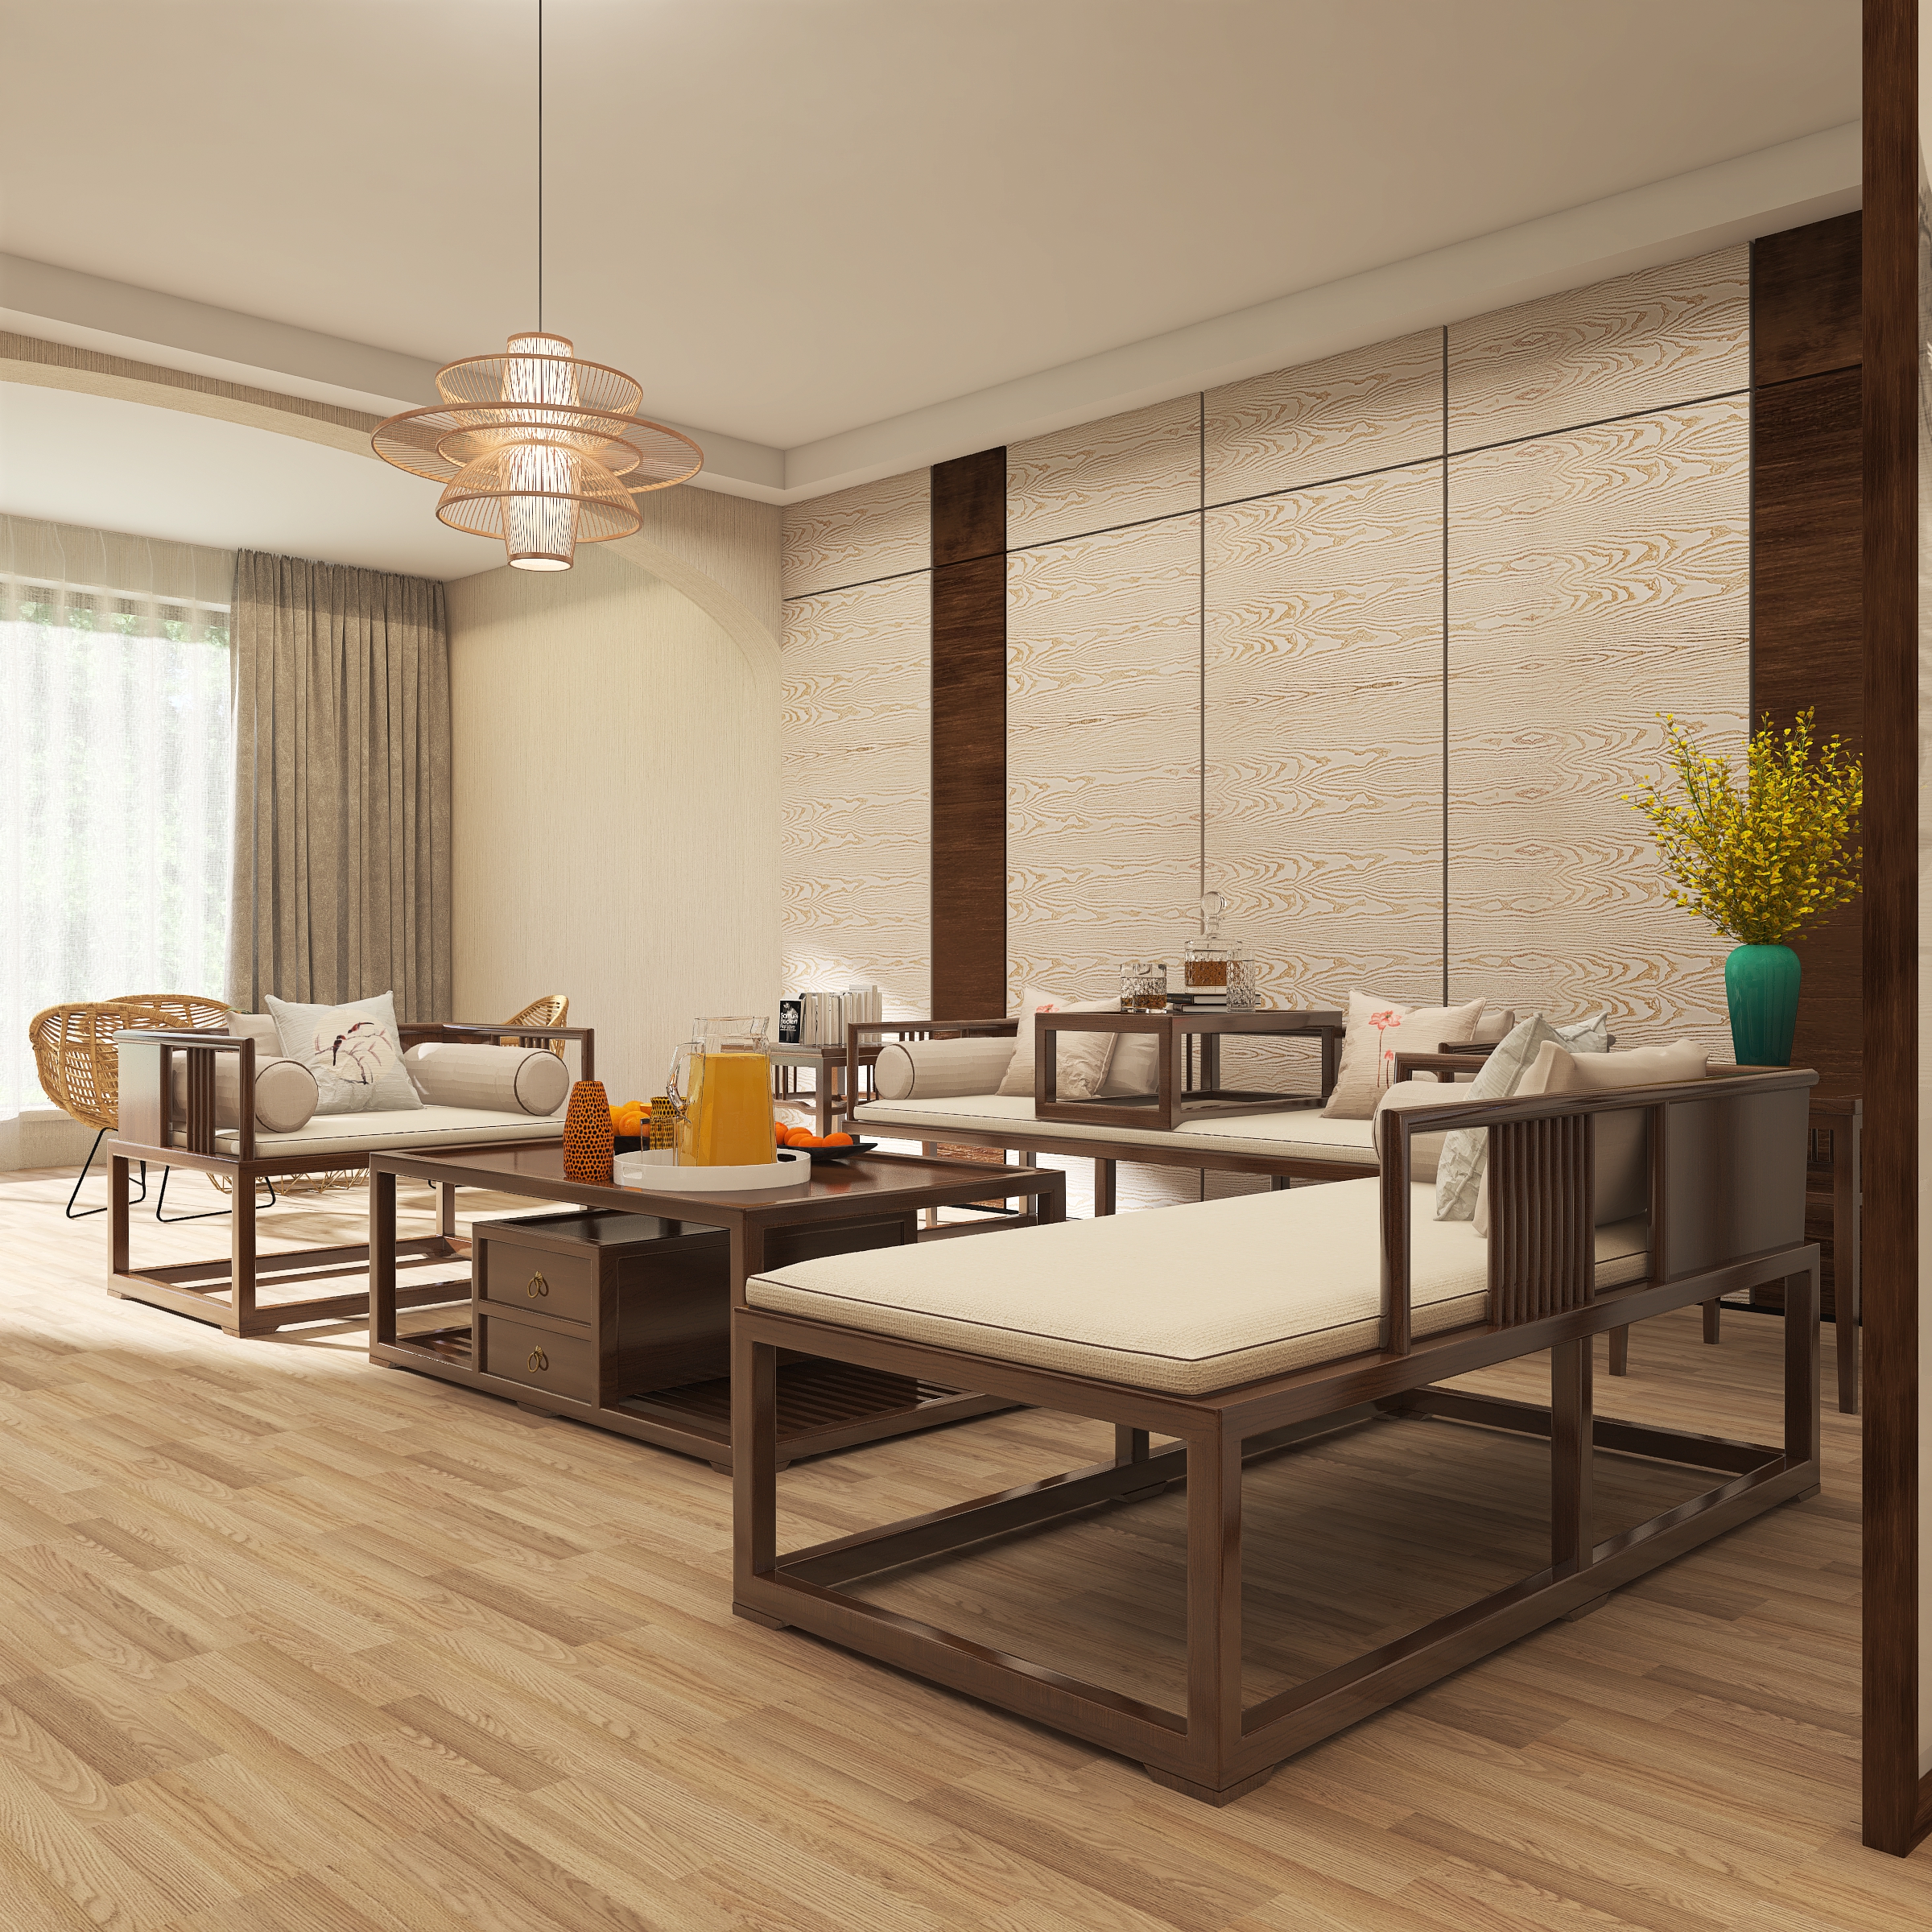 运用暖色和黑檀木色作为基调,原木色和造型简约的新中式实木沙发为居